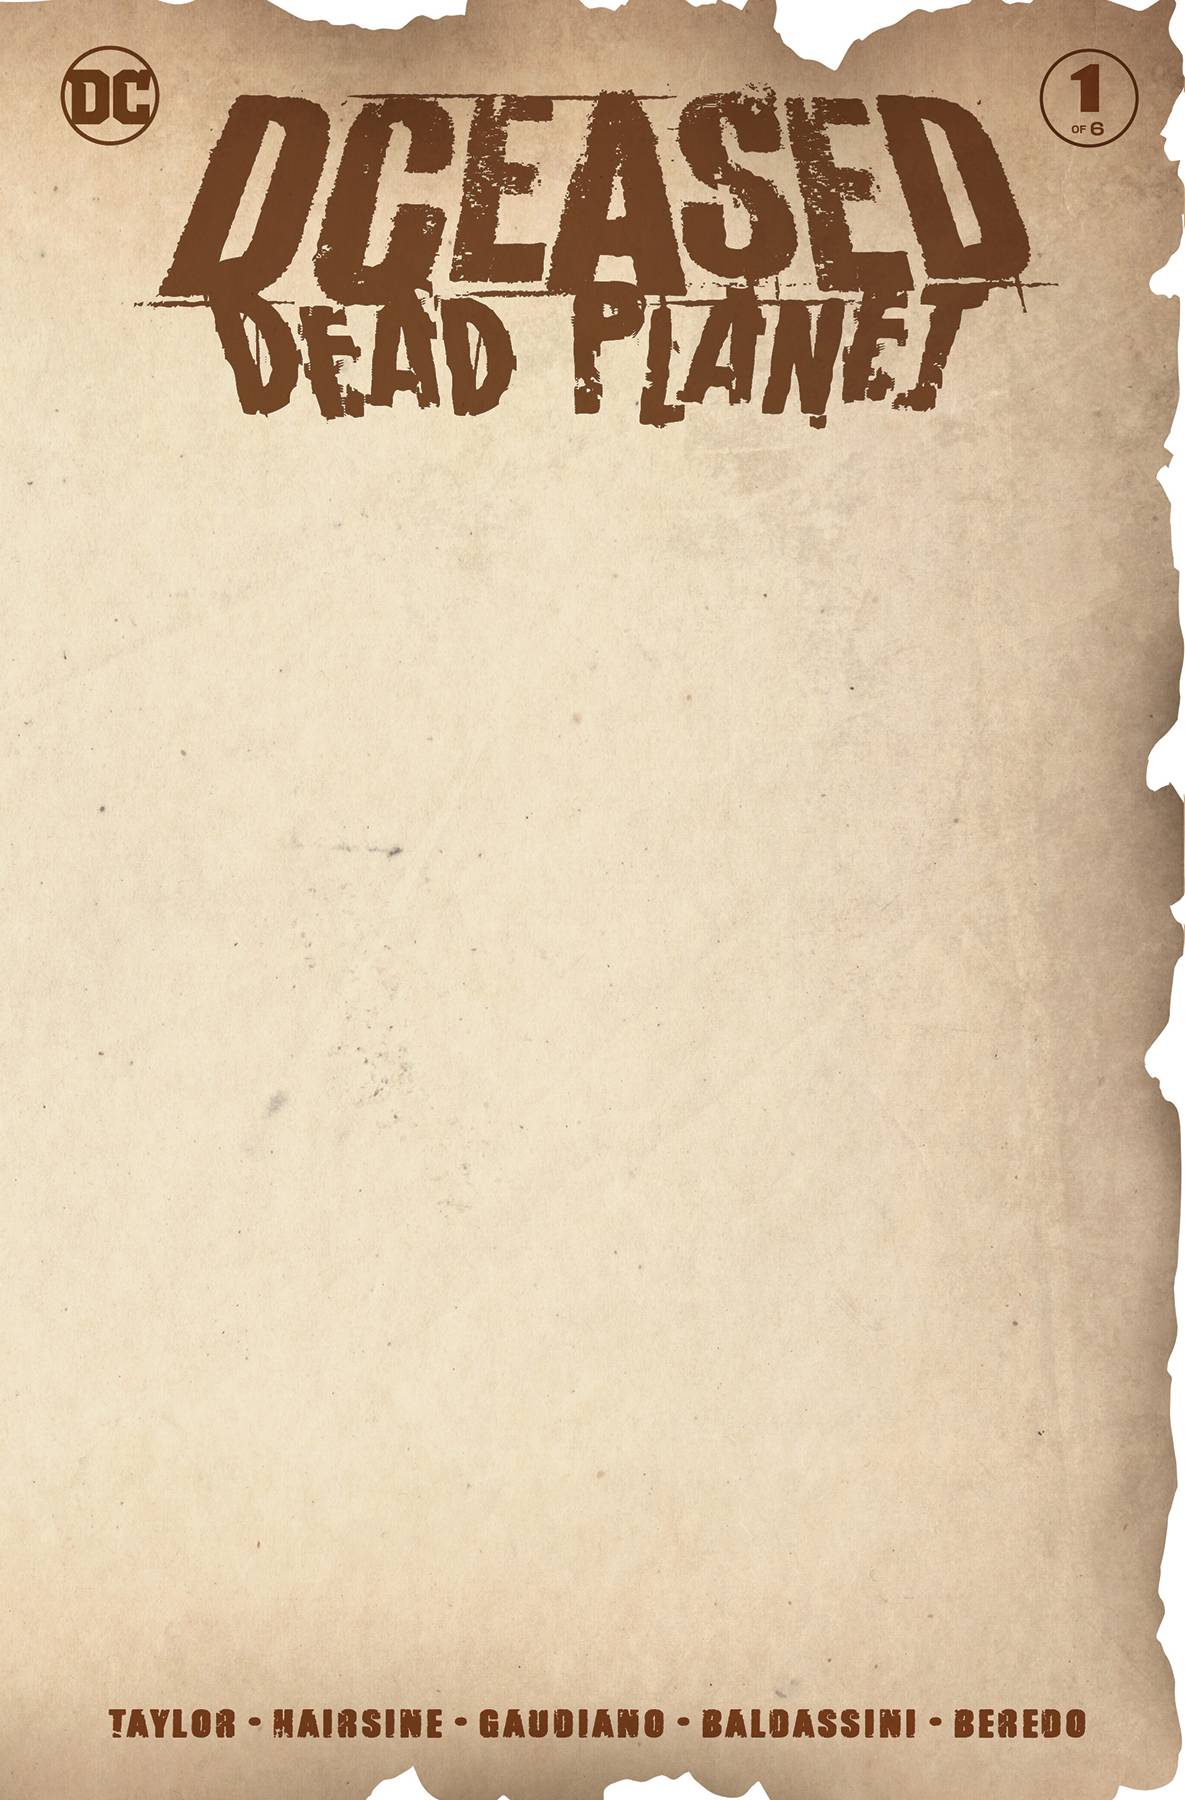 DCEASED DEAD PLANET #1 (OF 6) BLANK VARIANT 07/07/20